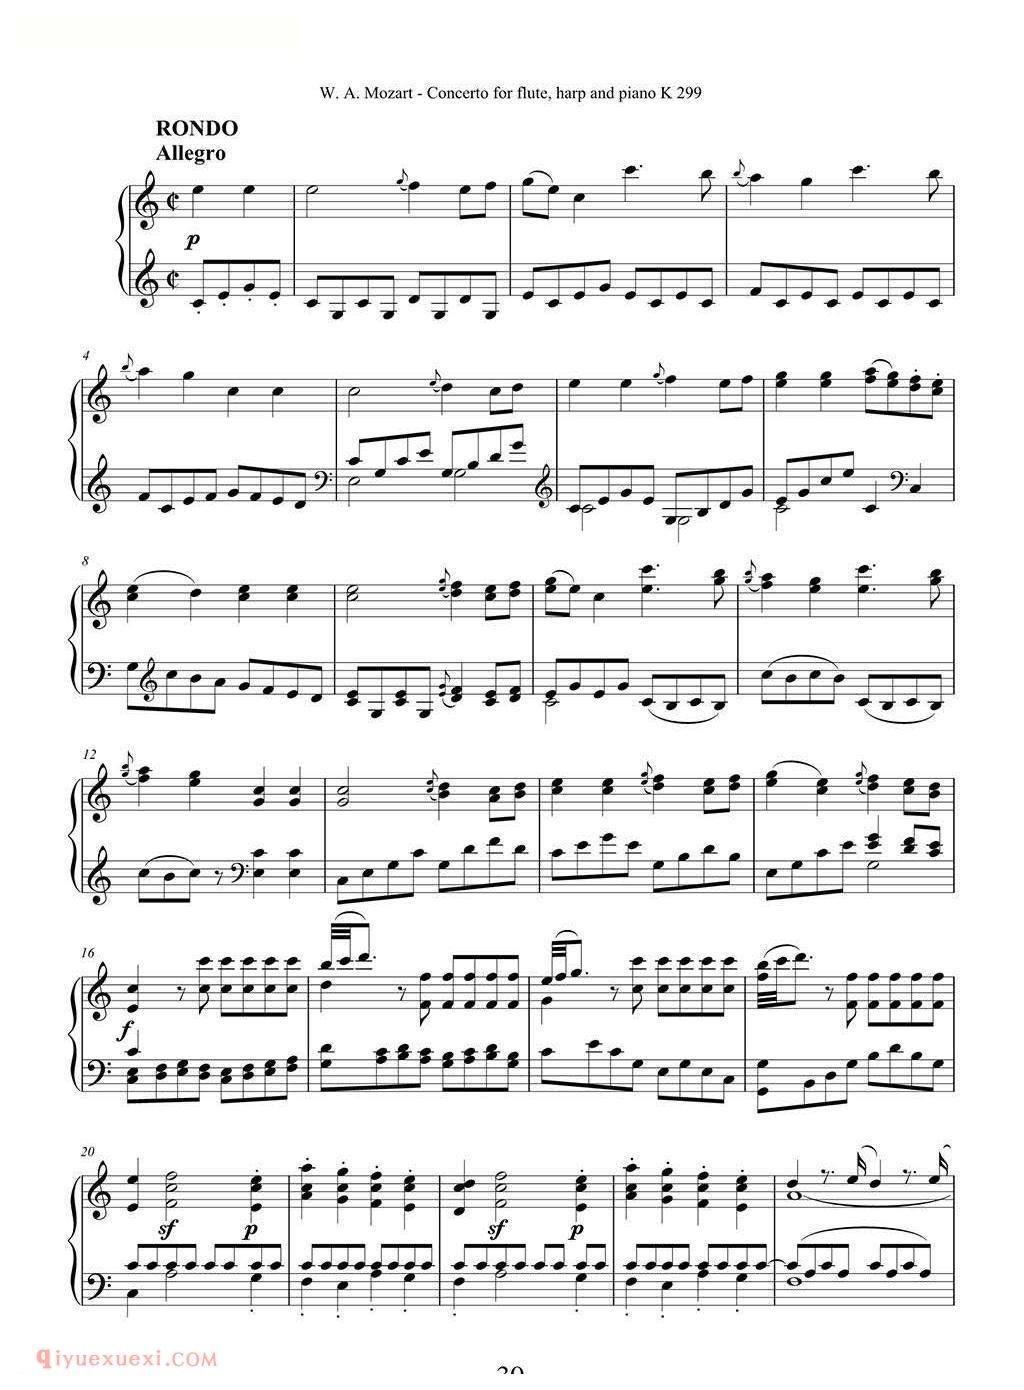 长笛竖琴钢伴谱/莫扎特C大调长笛竖琴协奏曲 K.299 Ⅲ